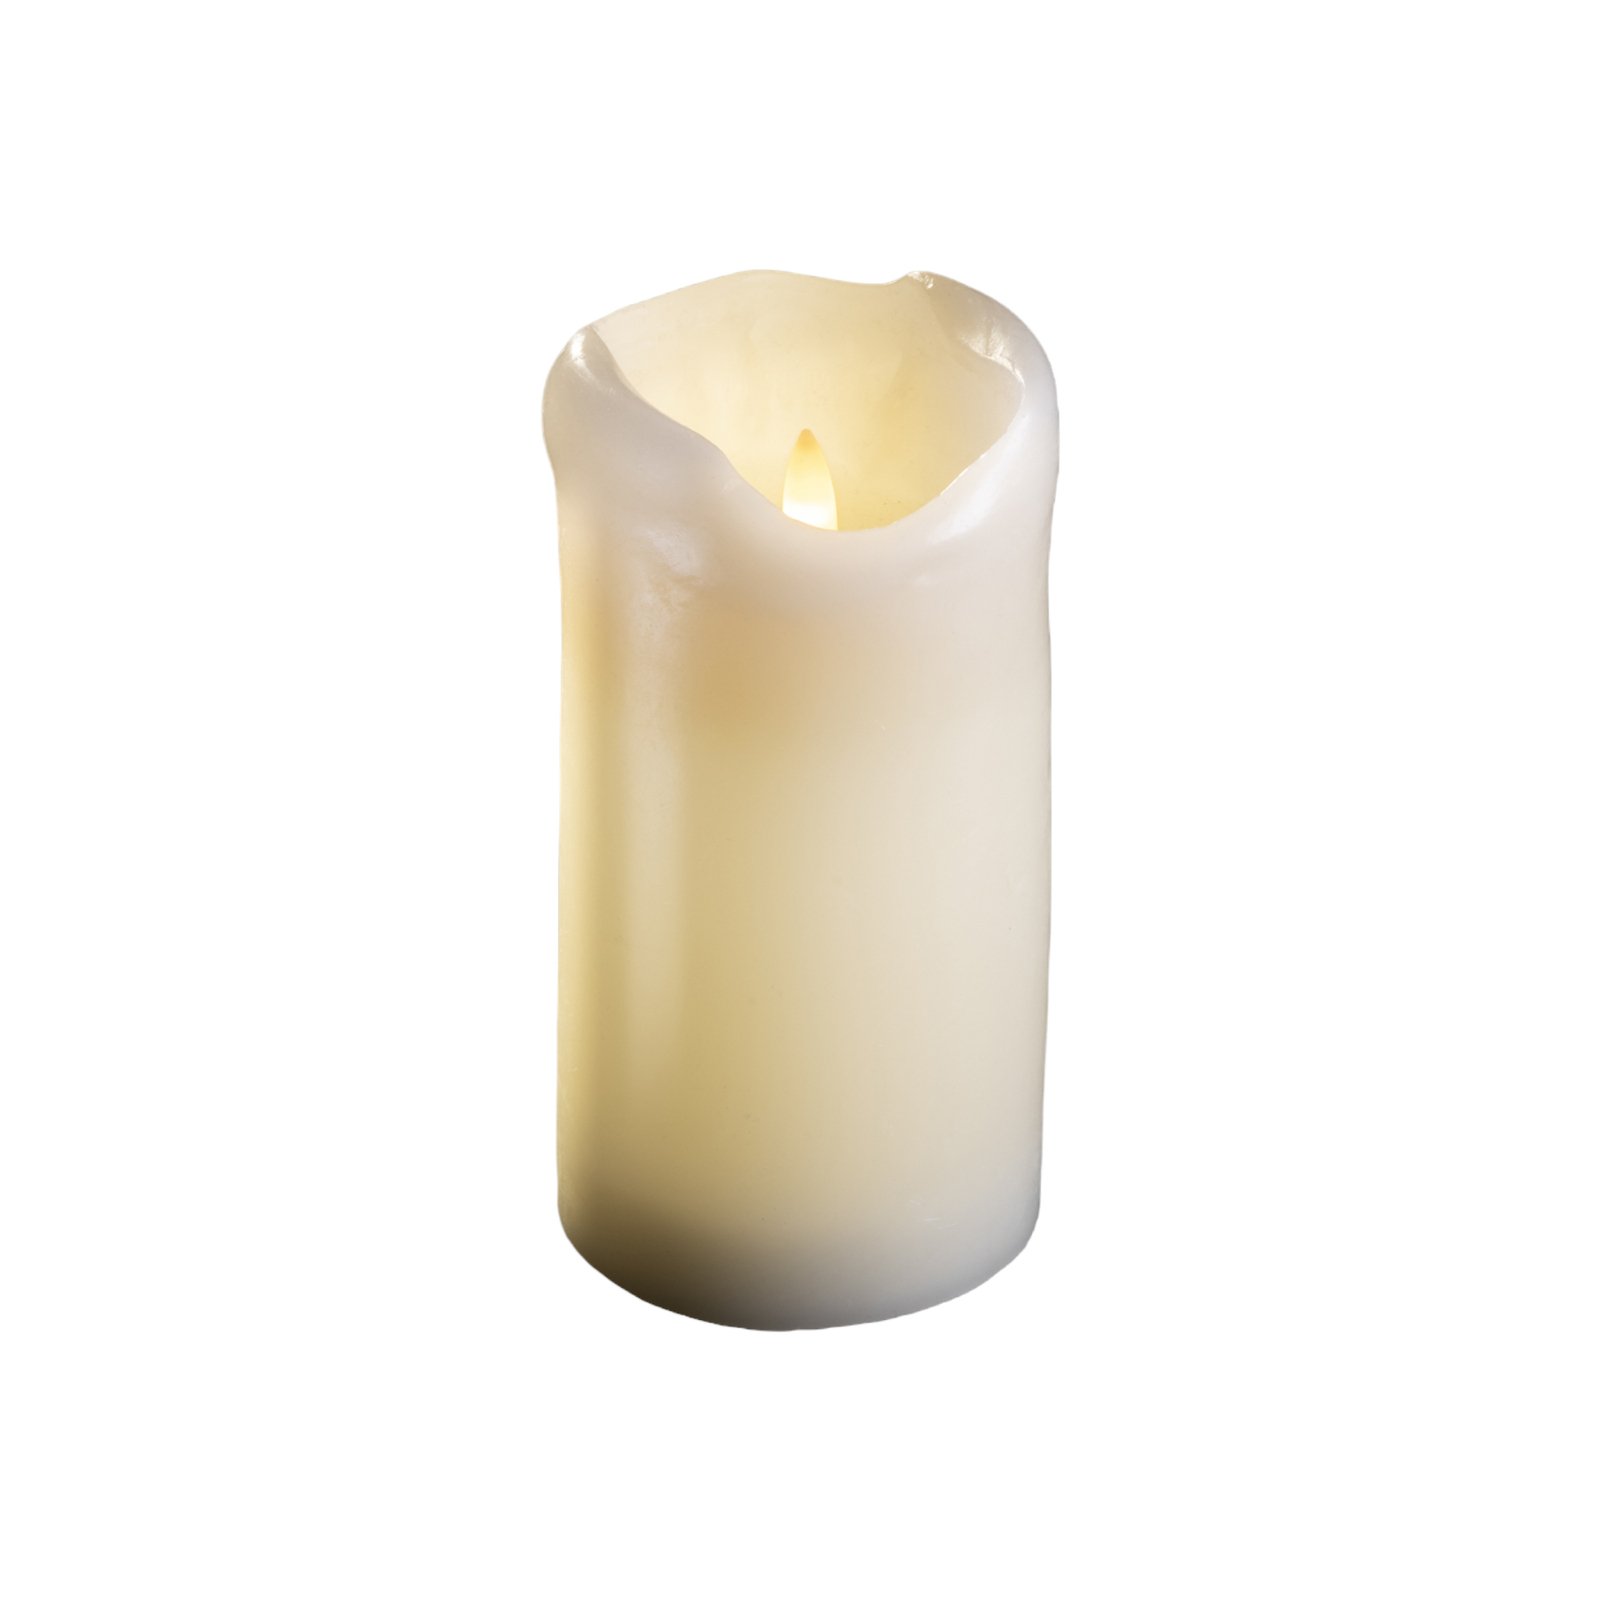 Sterntaler bougie LED cire ivoire hauteur 15 cm